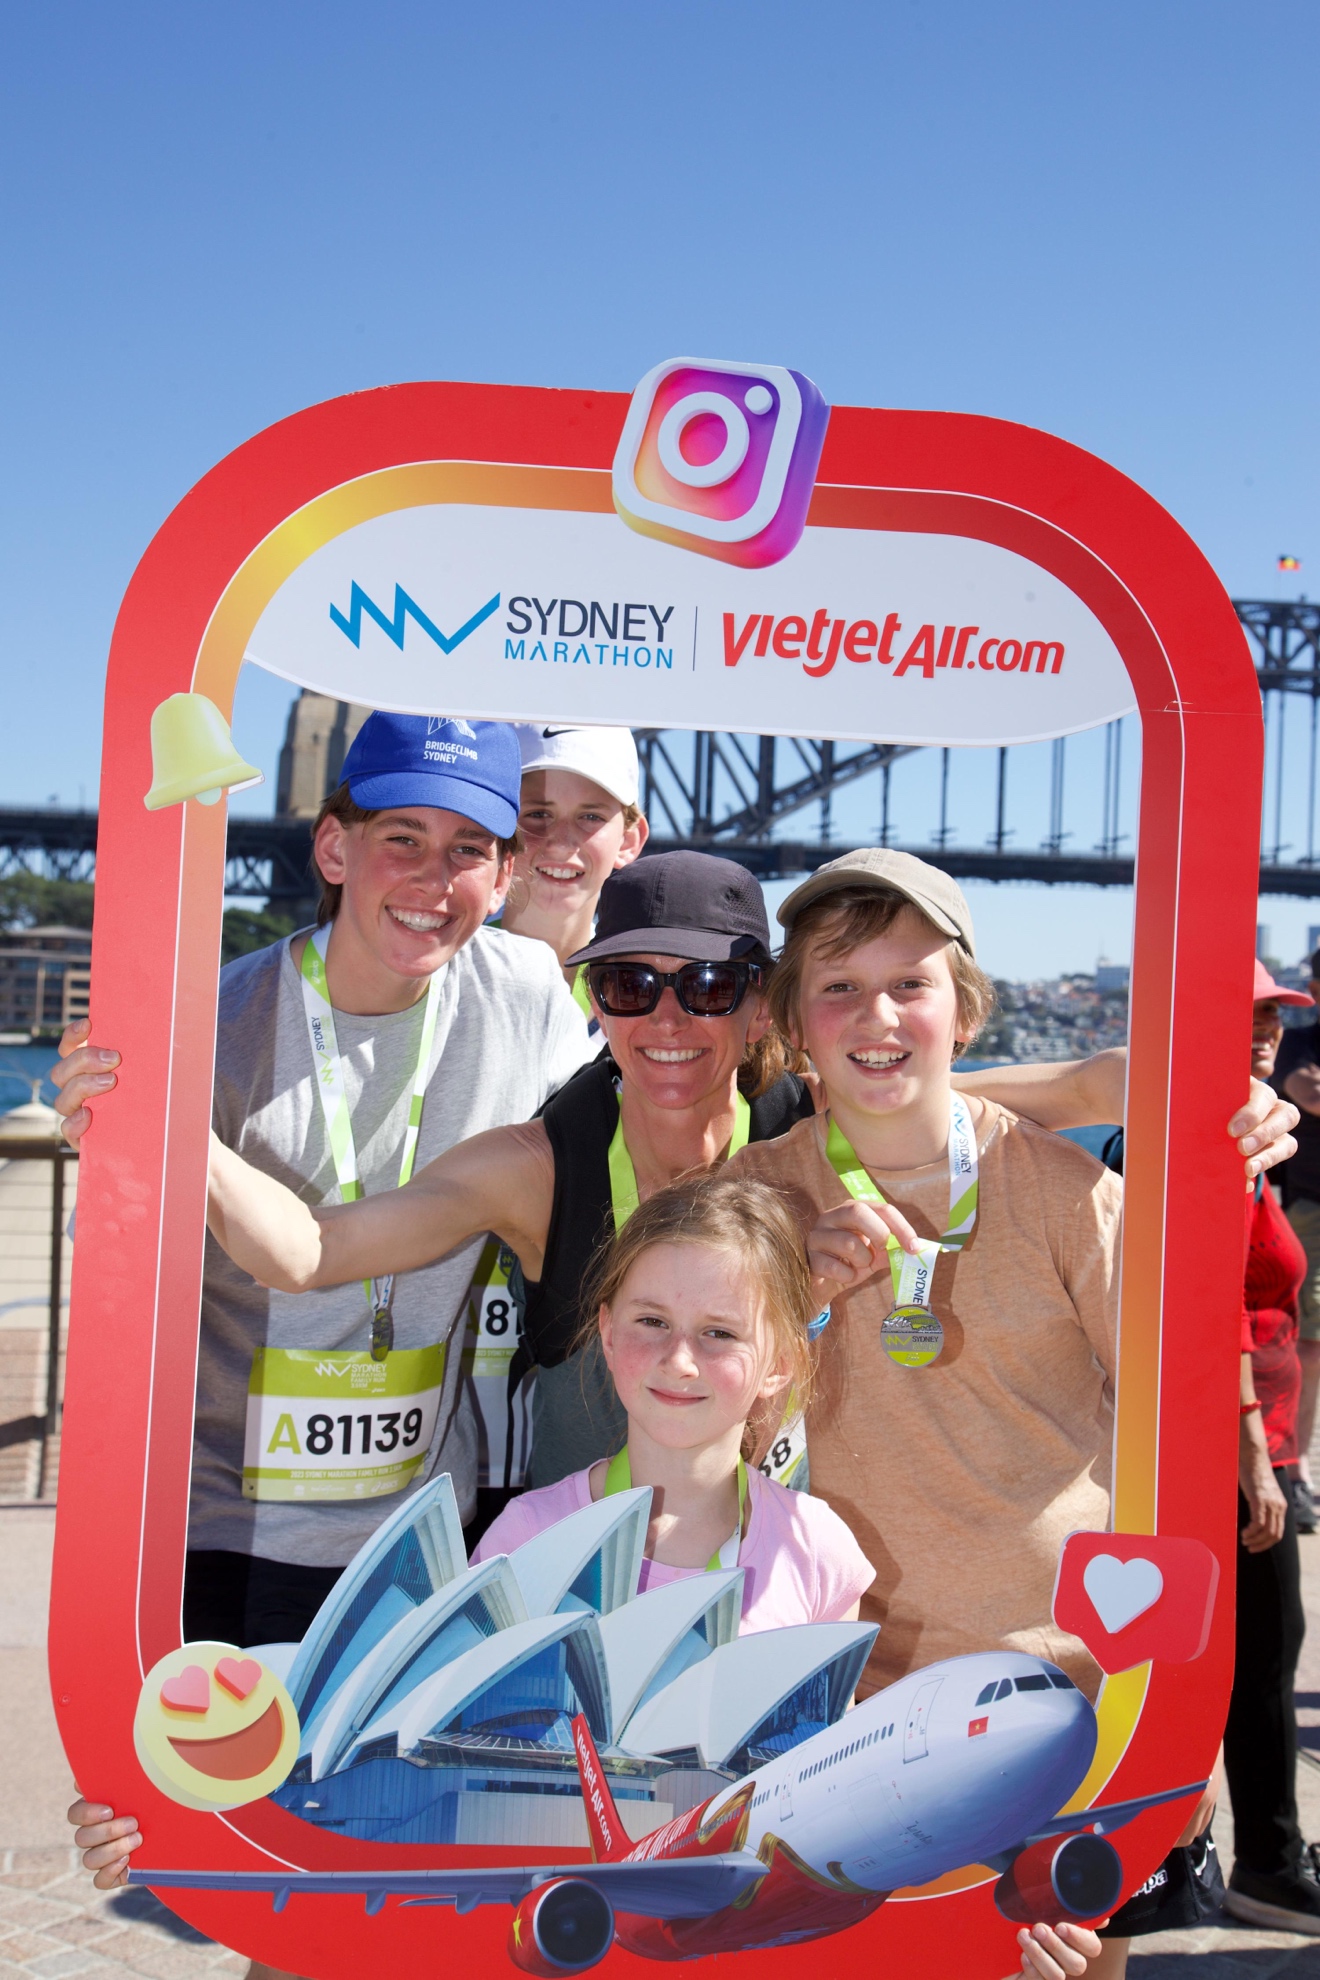 Bay đến Sydney chạy Marathon cùng Vietjet để không bỏ lỡ đường chạy đẹp nhất hành tinh - Ảnh 10.